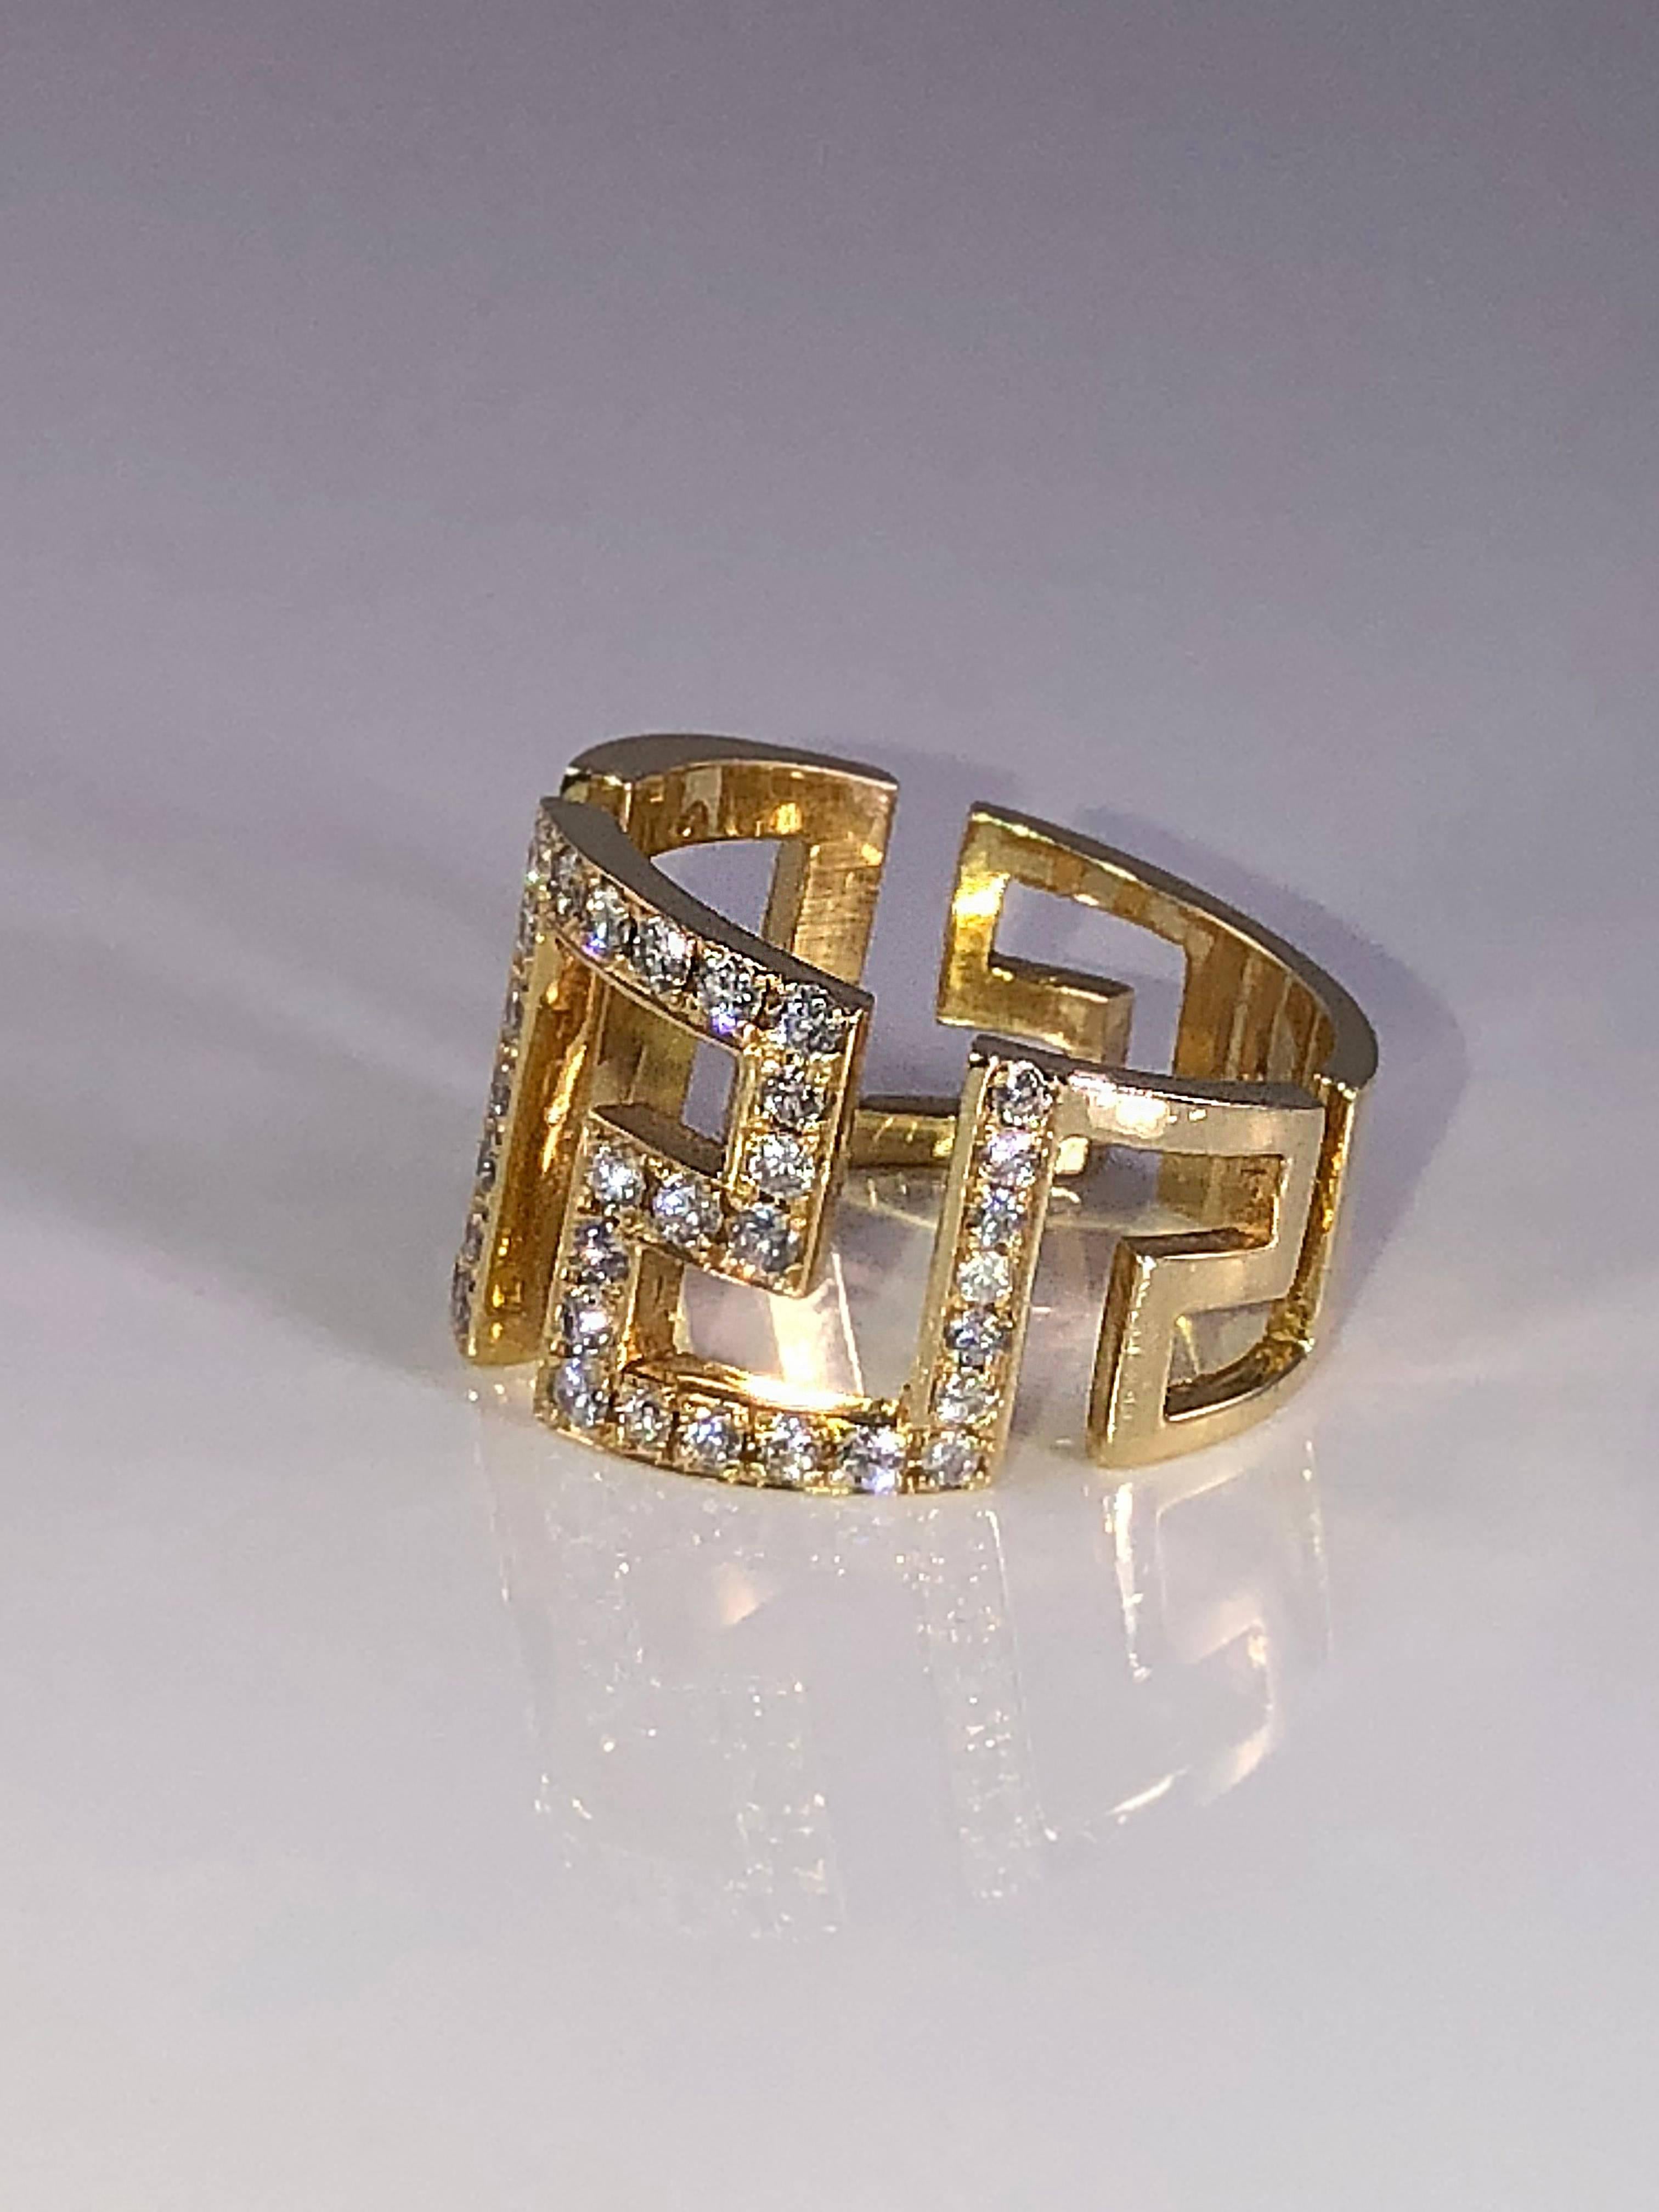 S. La bague en or jaune 18 carats faite à la main et ornée de diamants de Georgios présente le motif de la clé grecque qui symbolise l'éternité - le symbole d'une longue vie. La bague est ornée de diamants blancs taillés en brillant d'un poids total